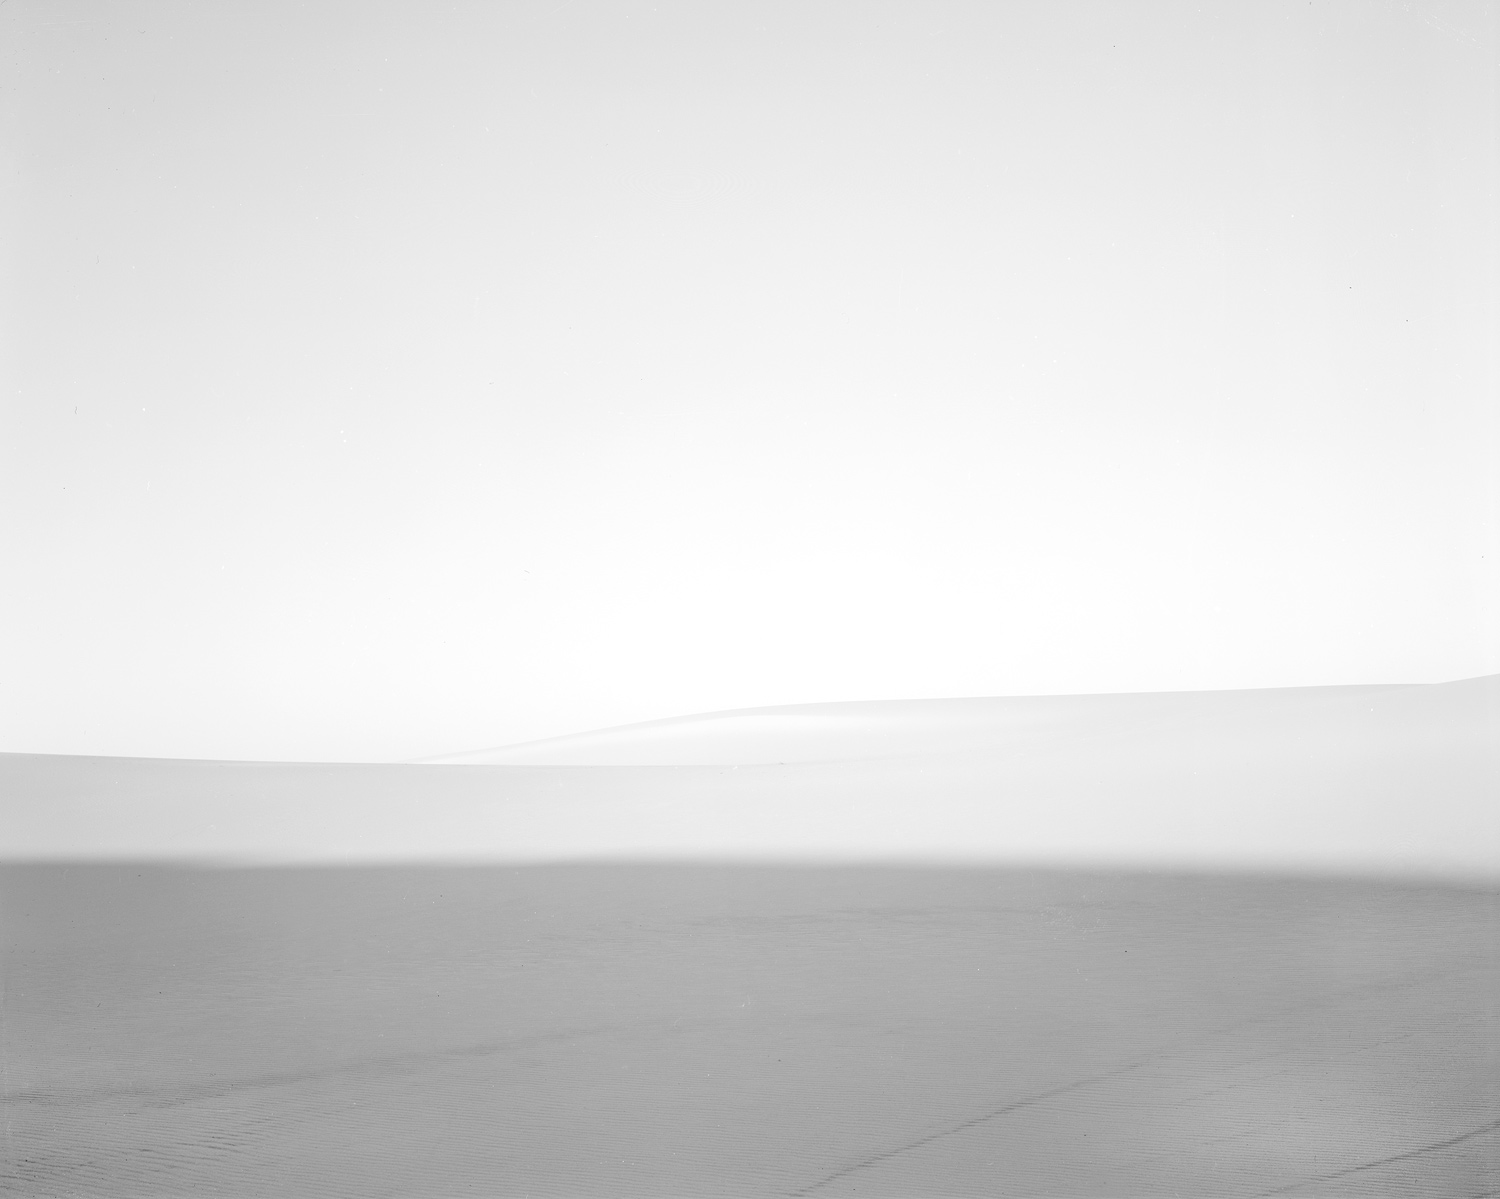  Dune #2, 2011 